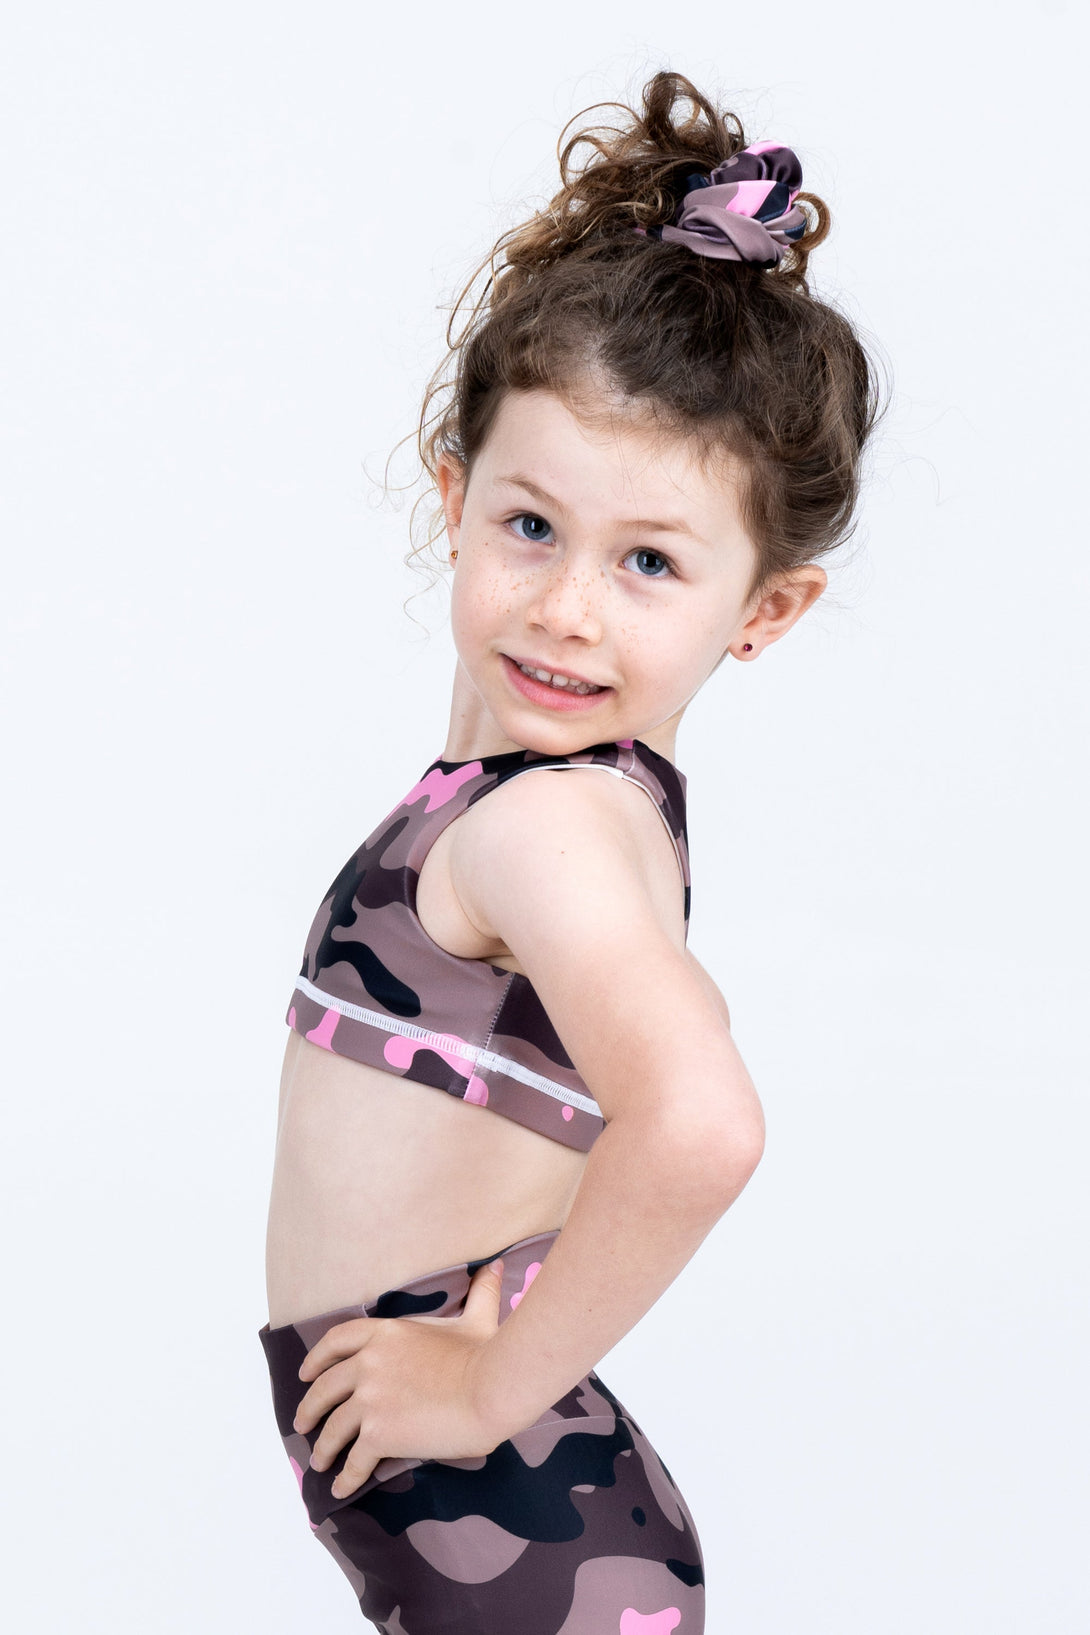 Camo Crush Pink Performance - Kids Crop Top-Activewear-Exoticathletica